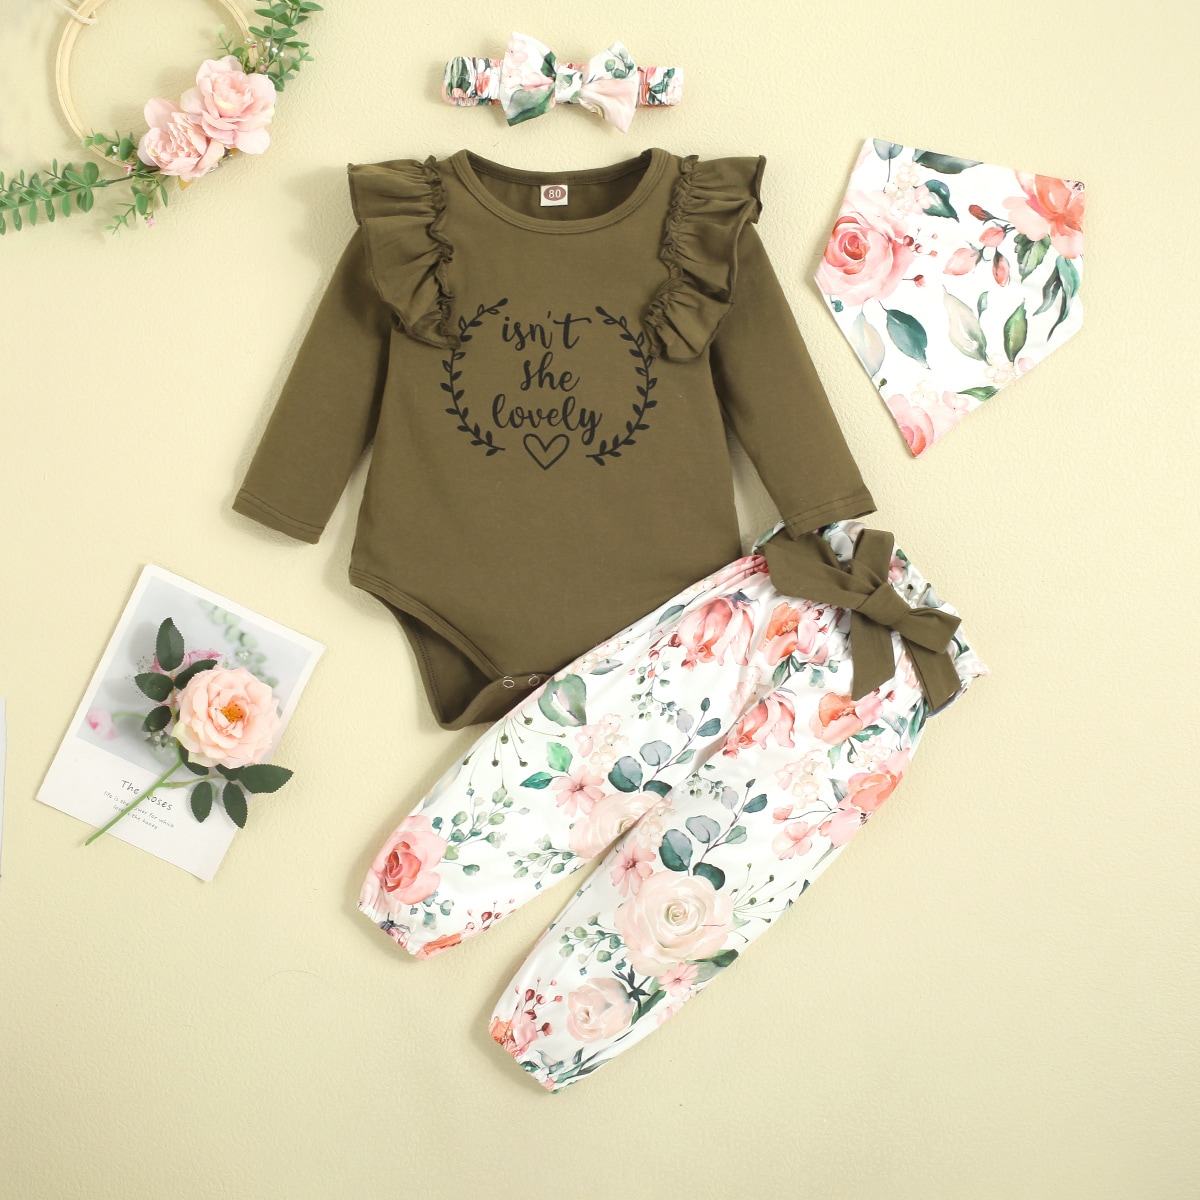 Малыш и мама > Детская одежда > Комплекты для малыша > Детское боди с текстовым принтом & брюки с поясом & нагрудник с цветочным принтом